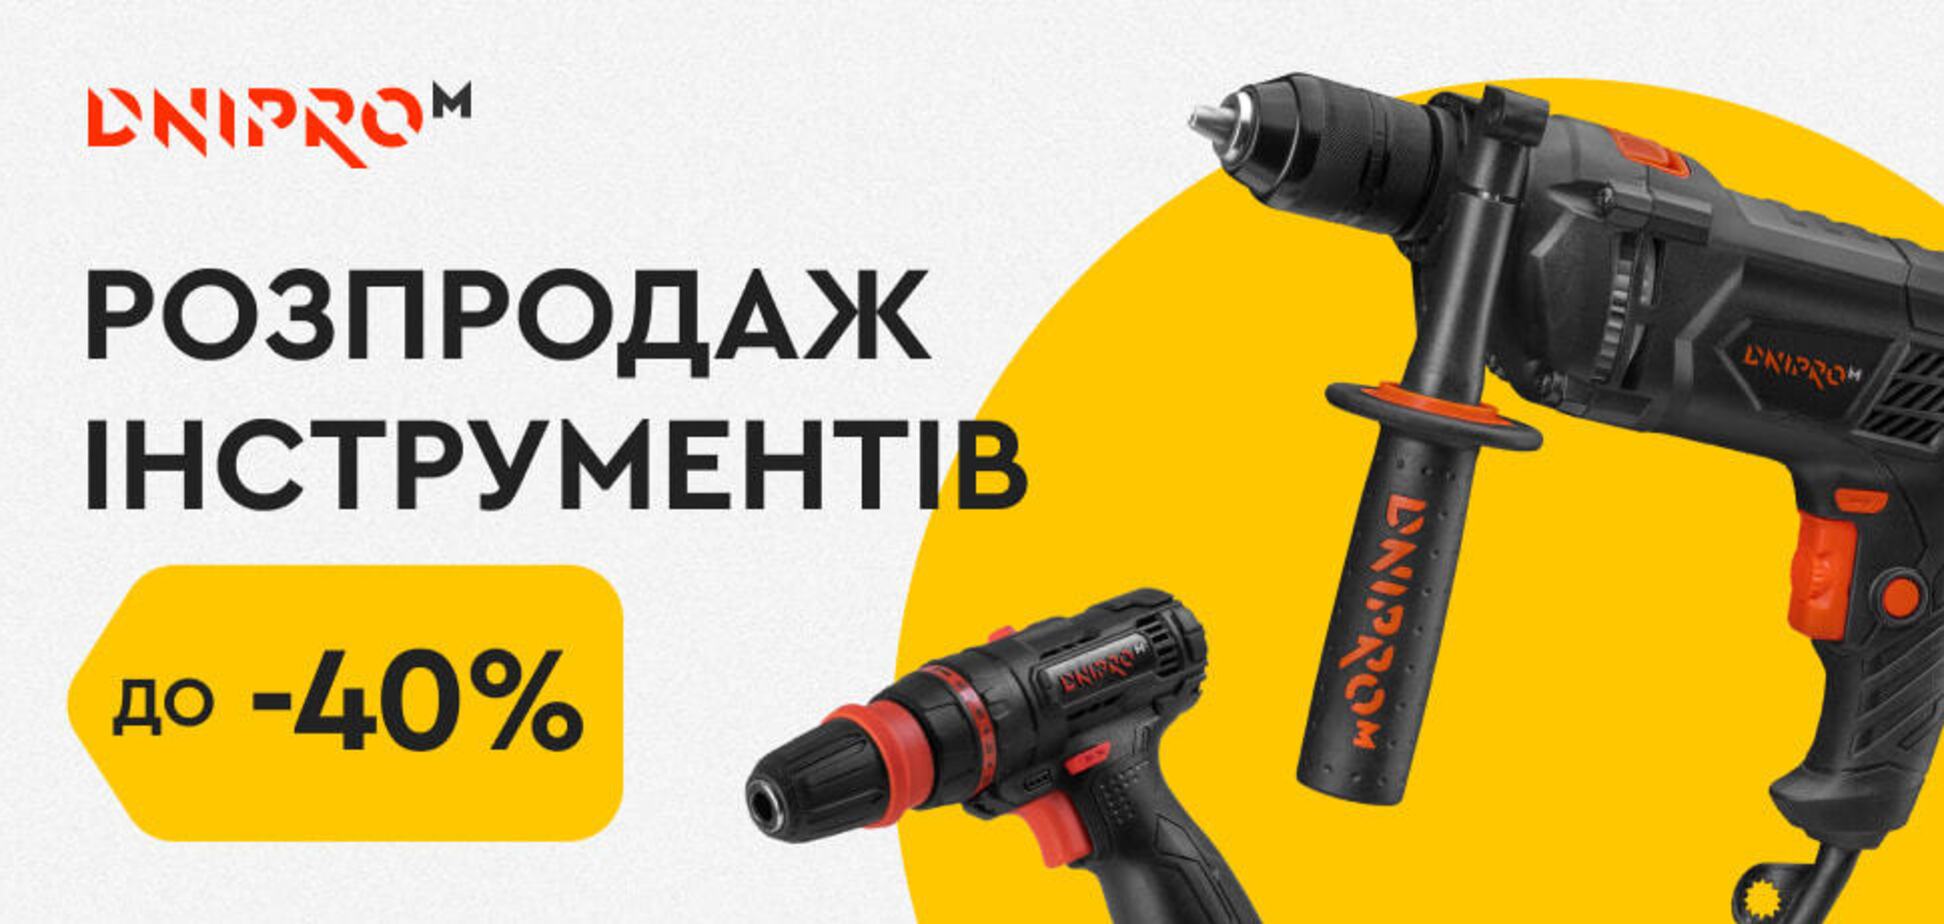 Dnipro-M анонсував розпродаж інструментів: що потрібно встигнути купити